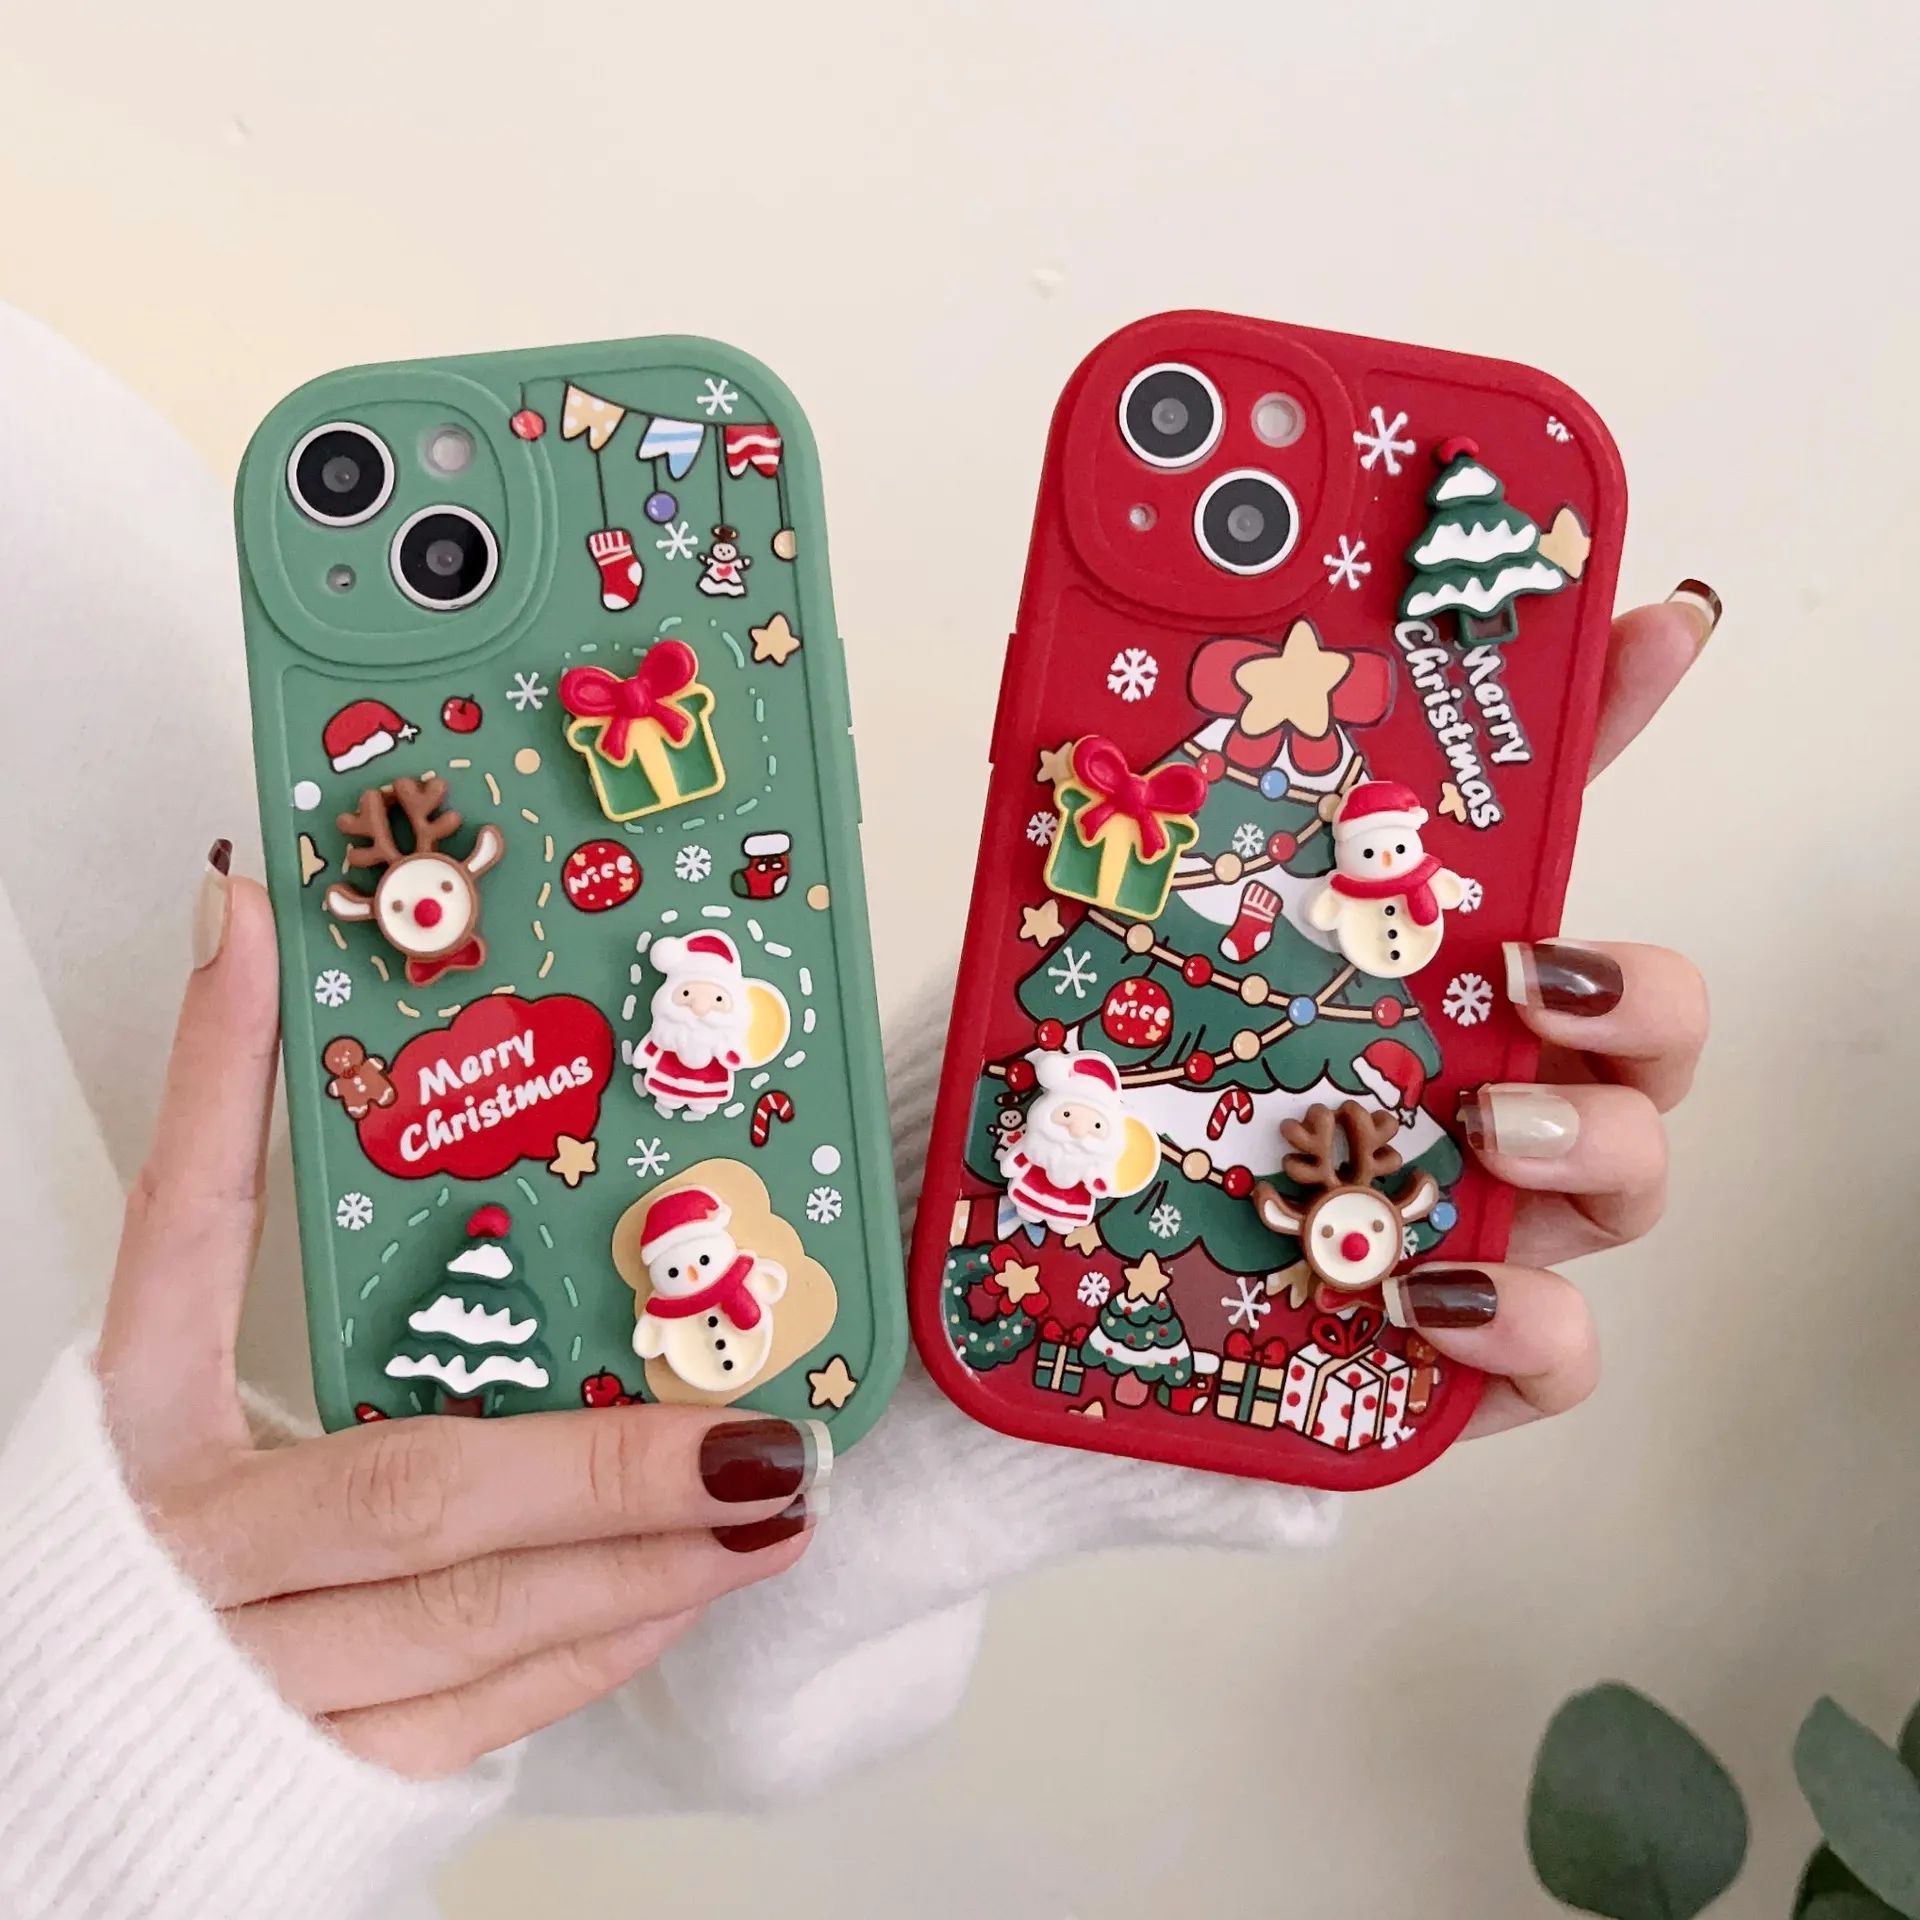 Christmas 3D Santa Claus phone case  drop resistant silicone soft case